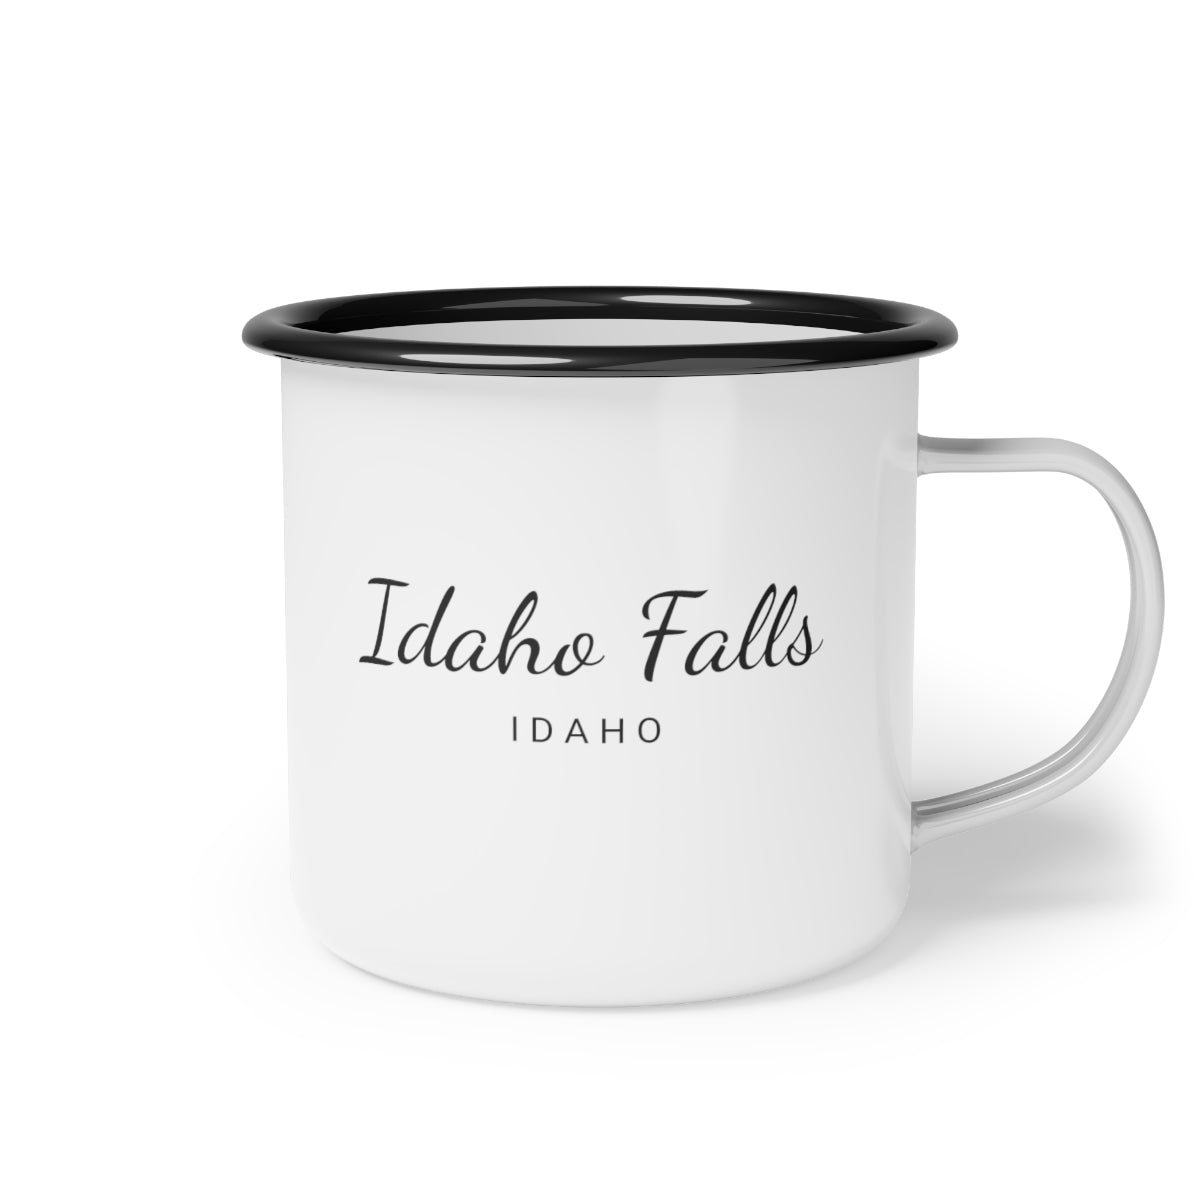 12oz enamel camp cup for Idaho Falls, Idaho Side view